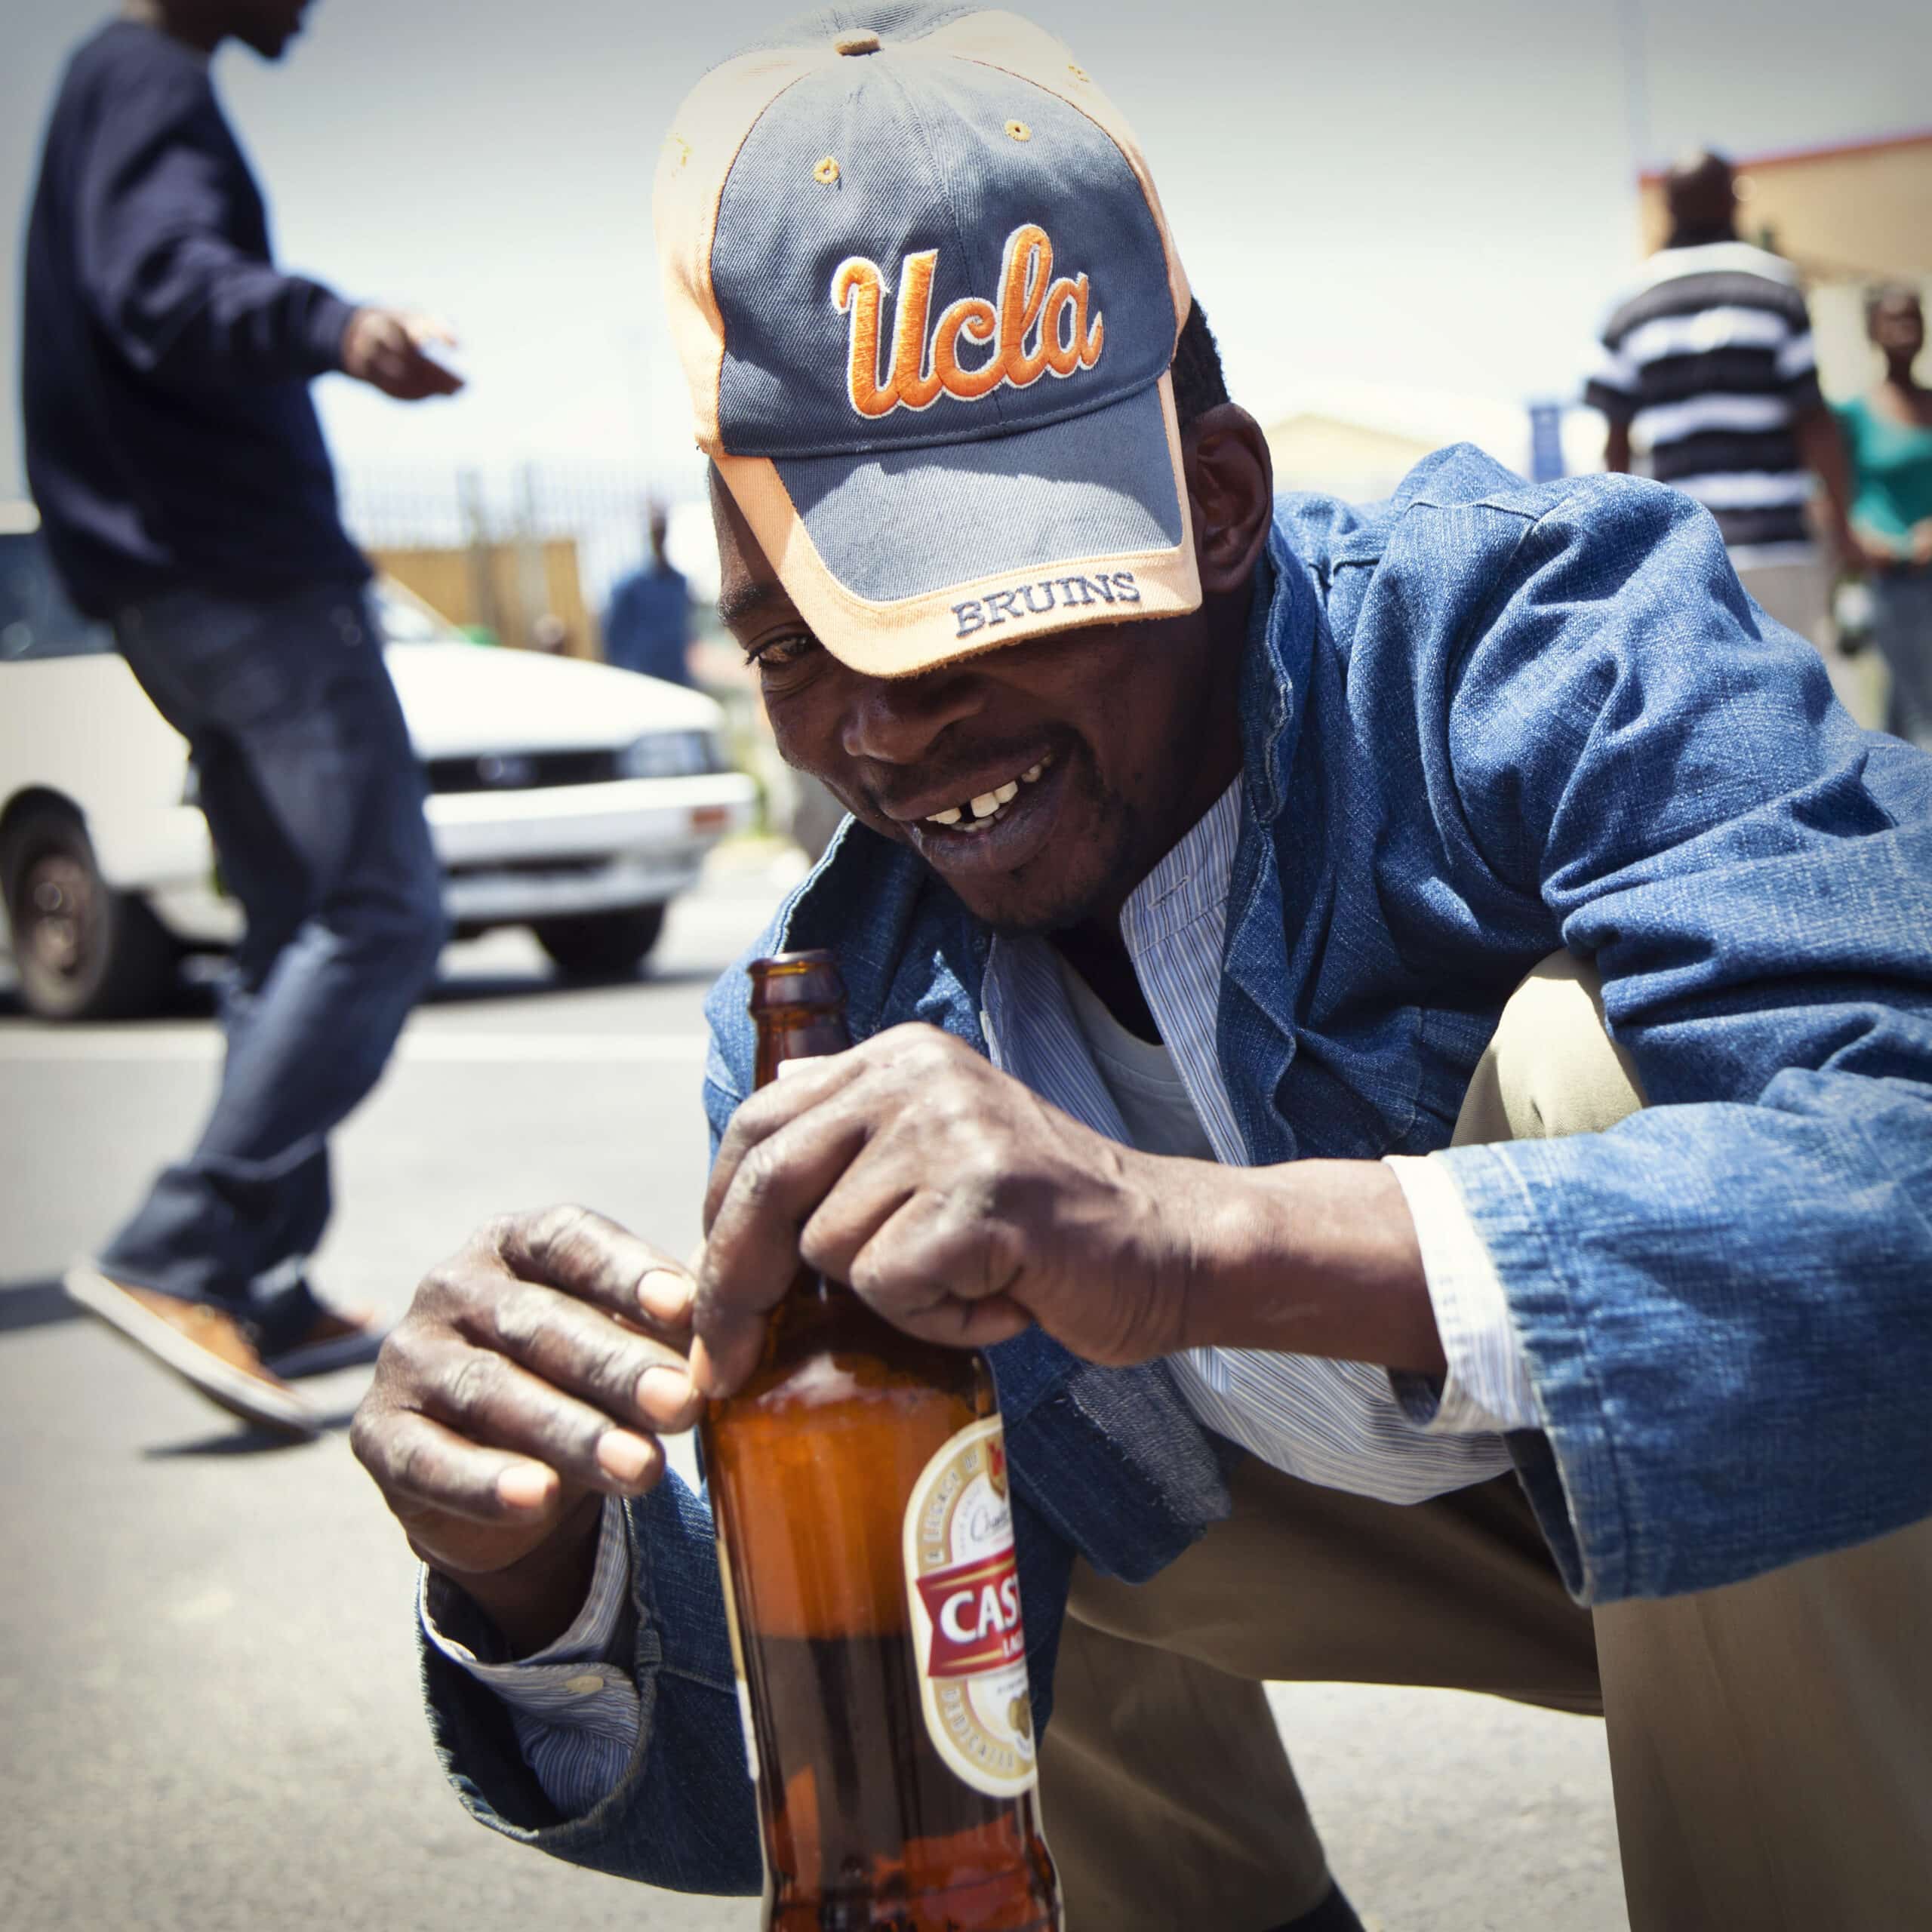 Ein Mann mit einer UCLA-Bruins-Kappe lächelt, während er auf einer sonnigen Straße eine Flasche Castle Beer öffnet, im Hintergrund ist eine weitere Person zu sehen. © Fotografie Tomas Rodriguez